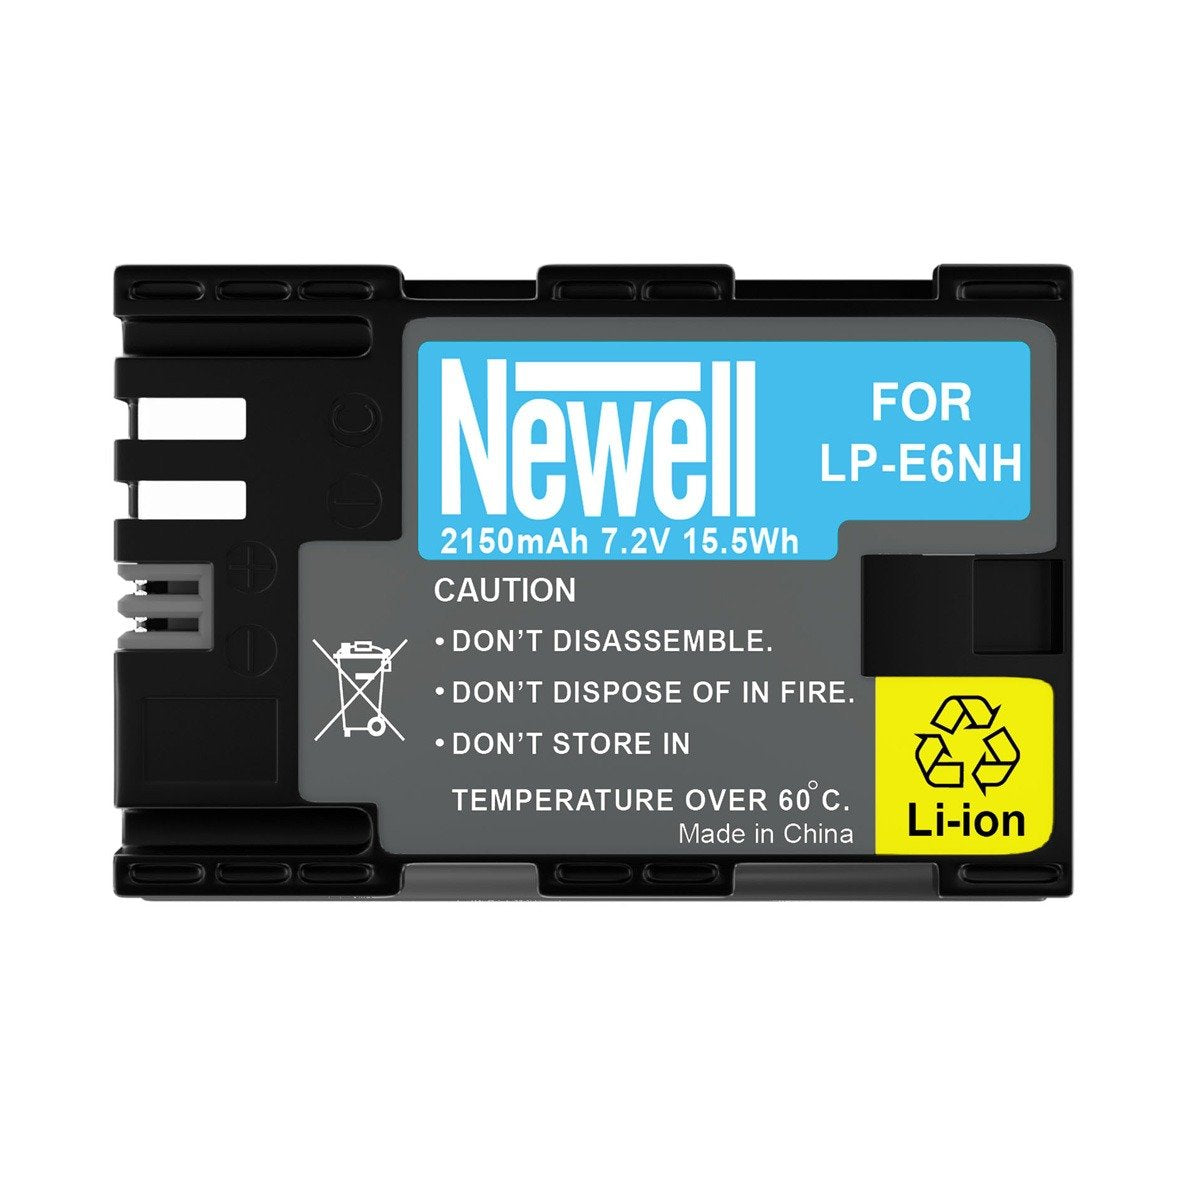 Newell Batteria compatibile Canon LP-E6NH